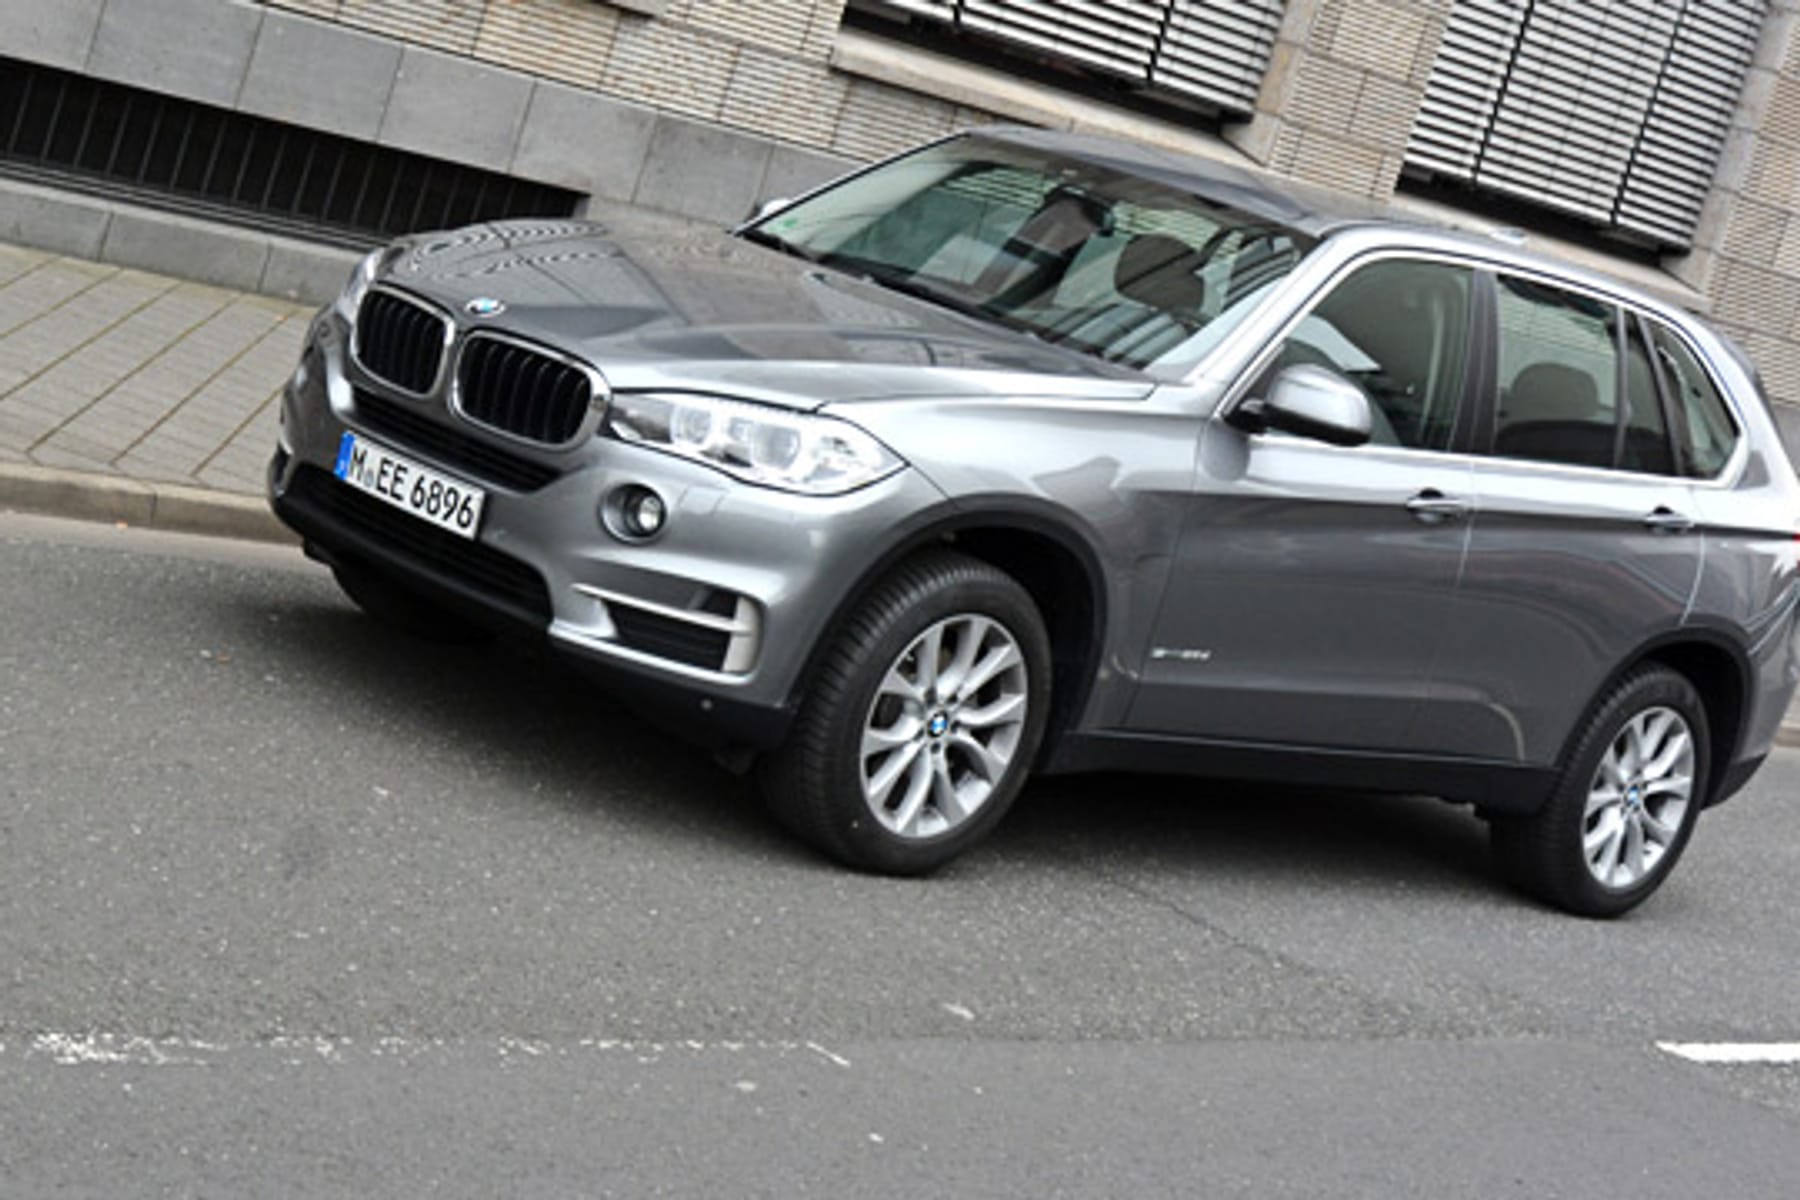 Gebrauchtwagencheck: BMW X5 E70 - nicht über alle Zweifel erhaben 